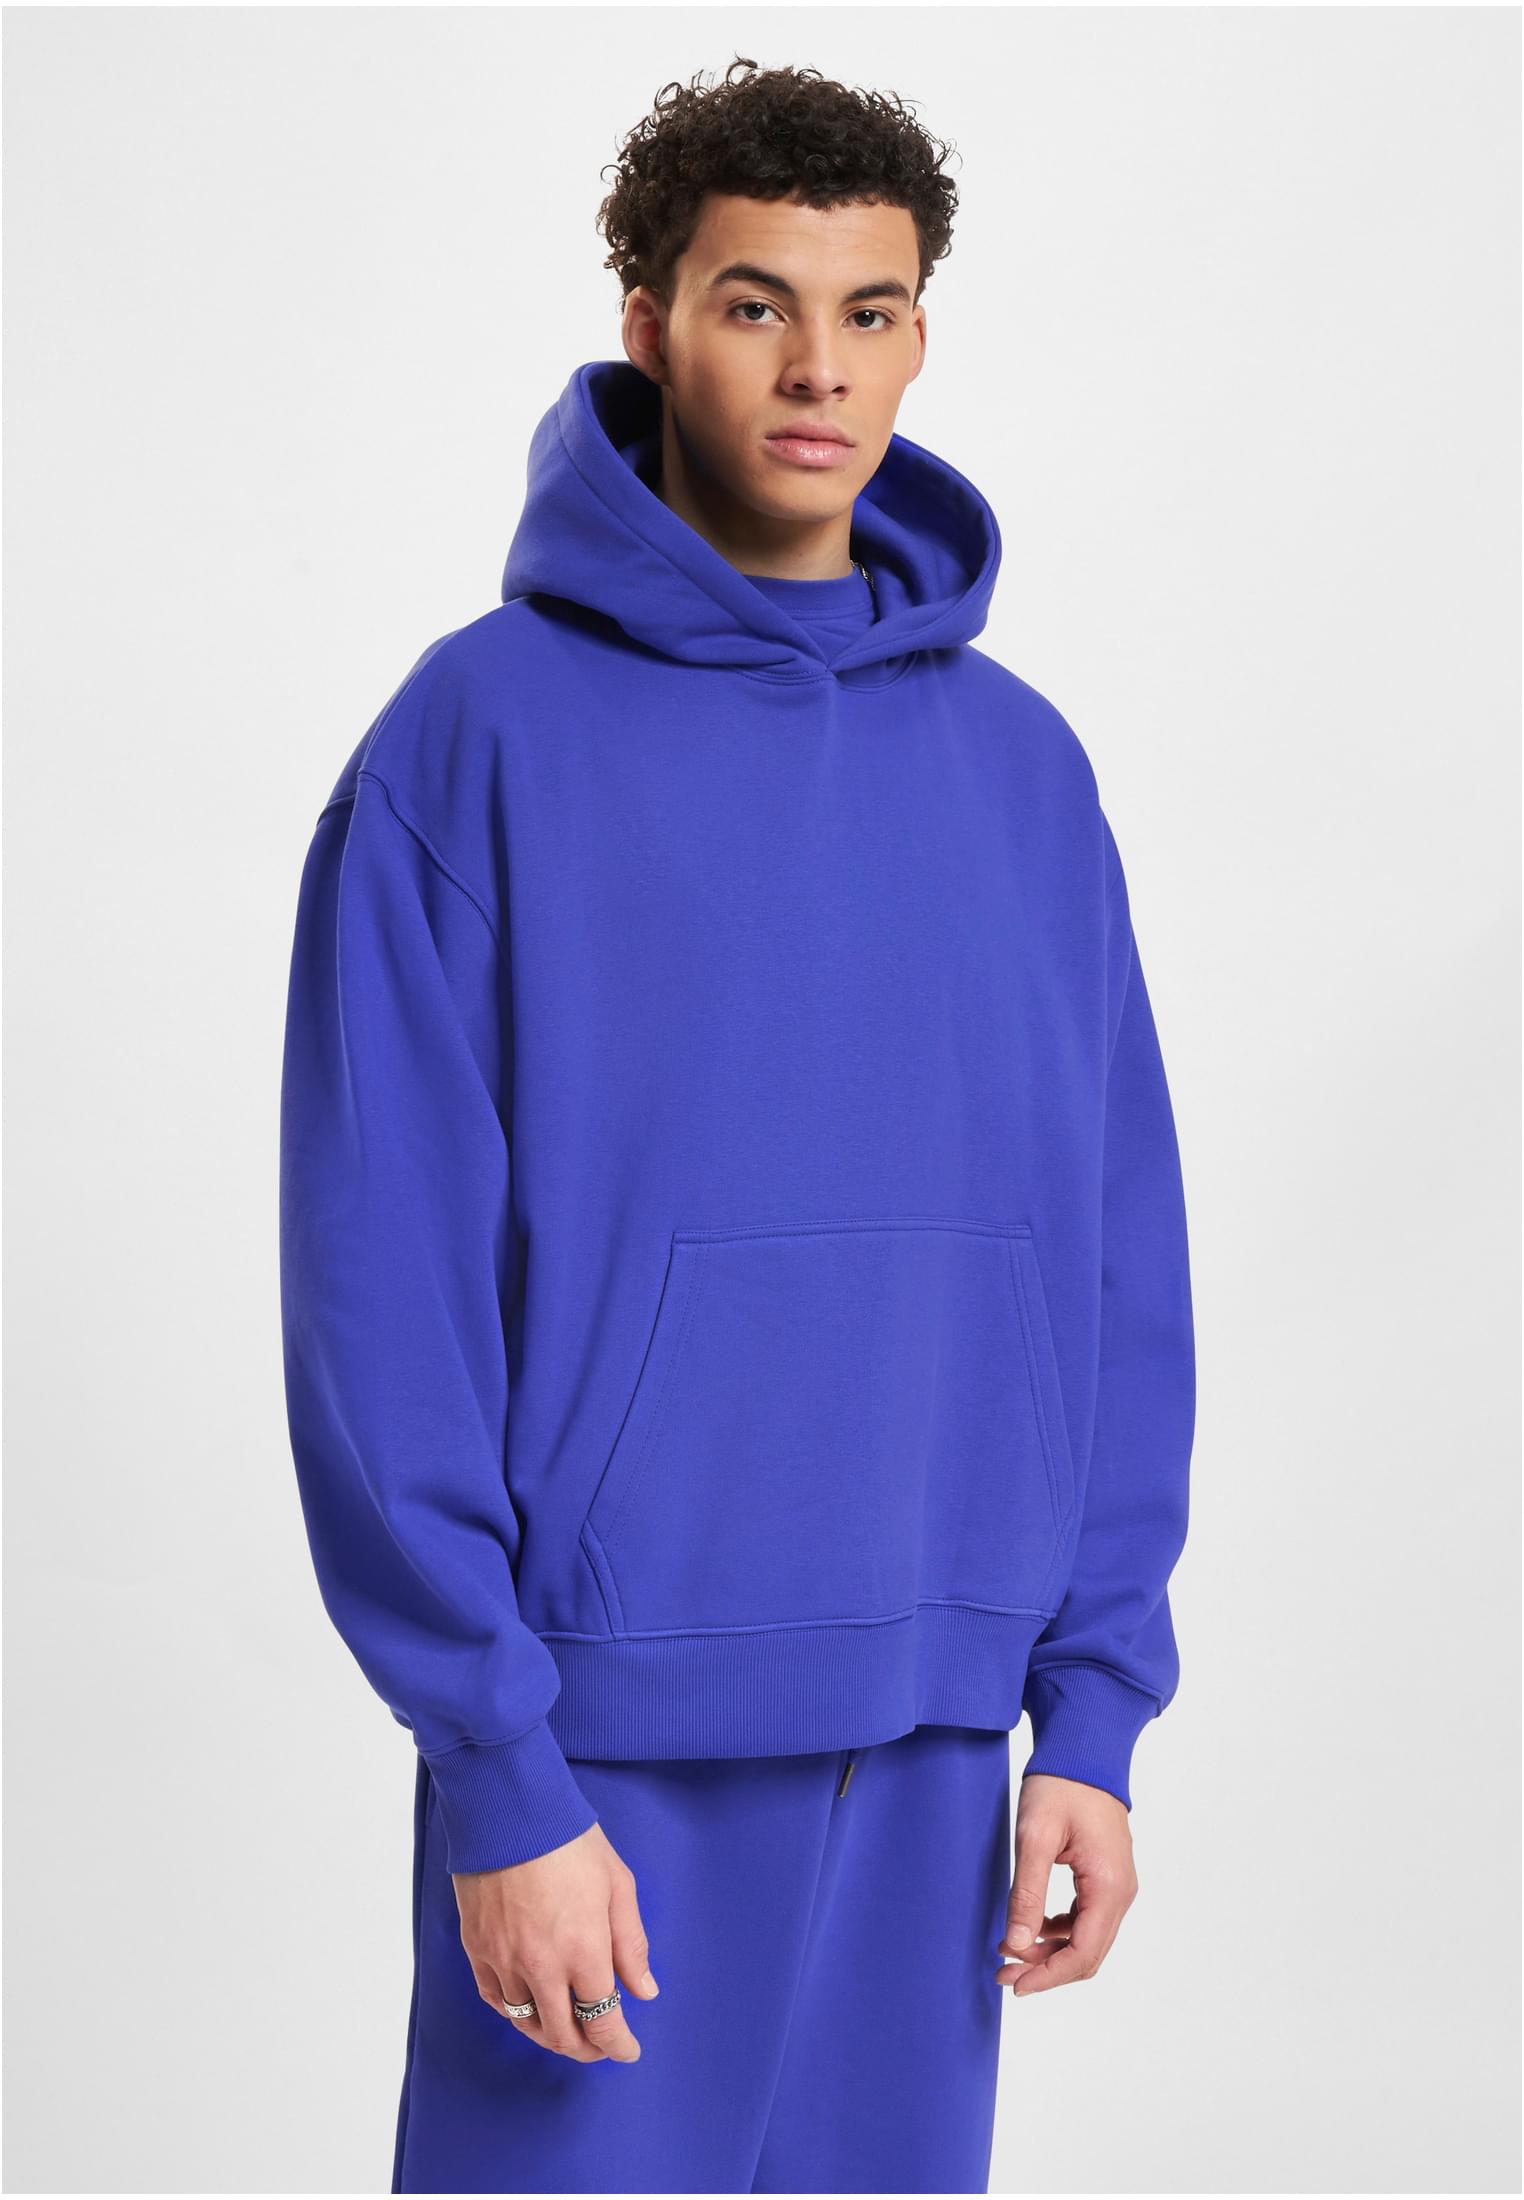 Men's sweatshirt DEF Hoody - cobalt blue